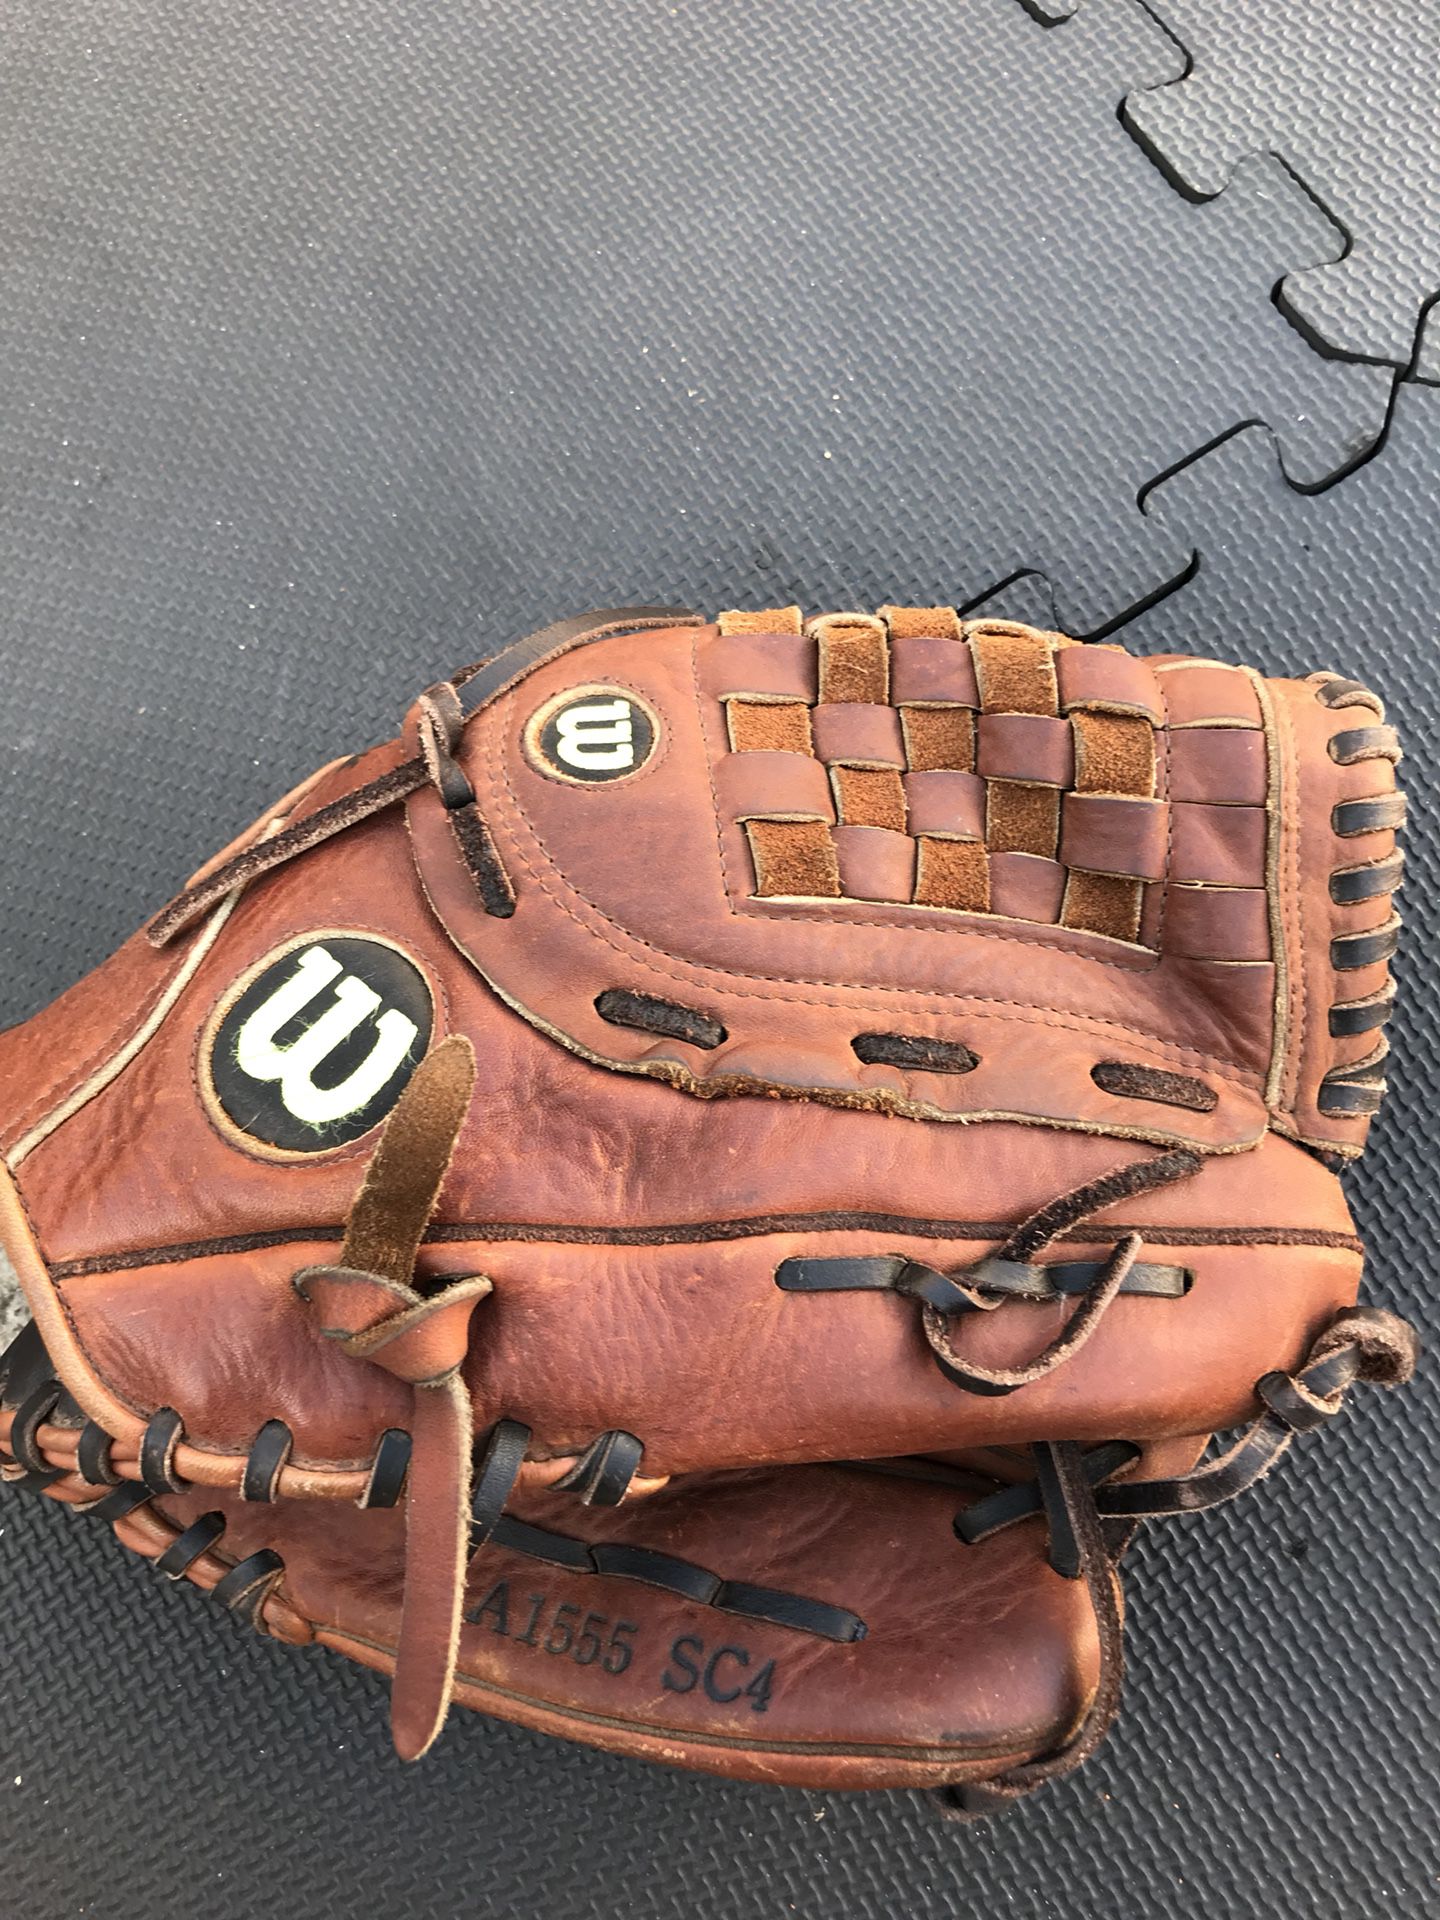 Wilson Baseball glove (13) for $30 Firm!!!